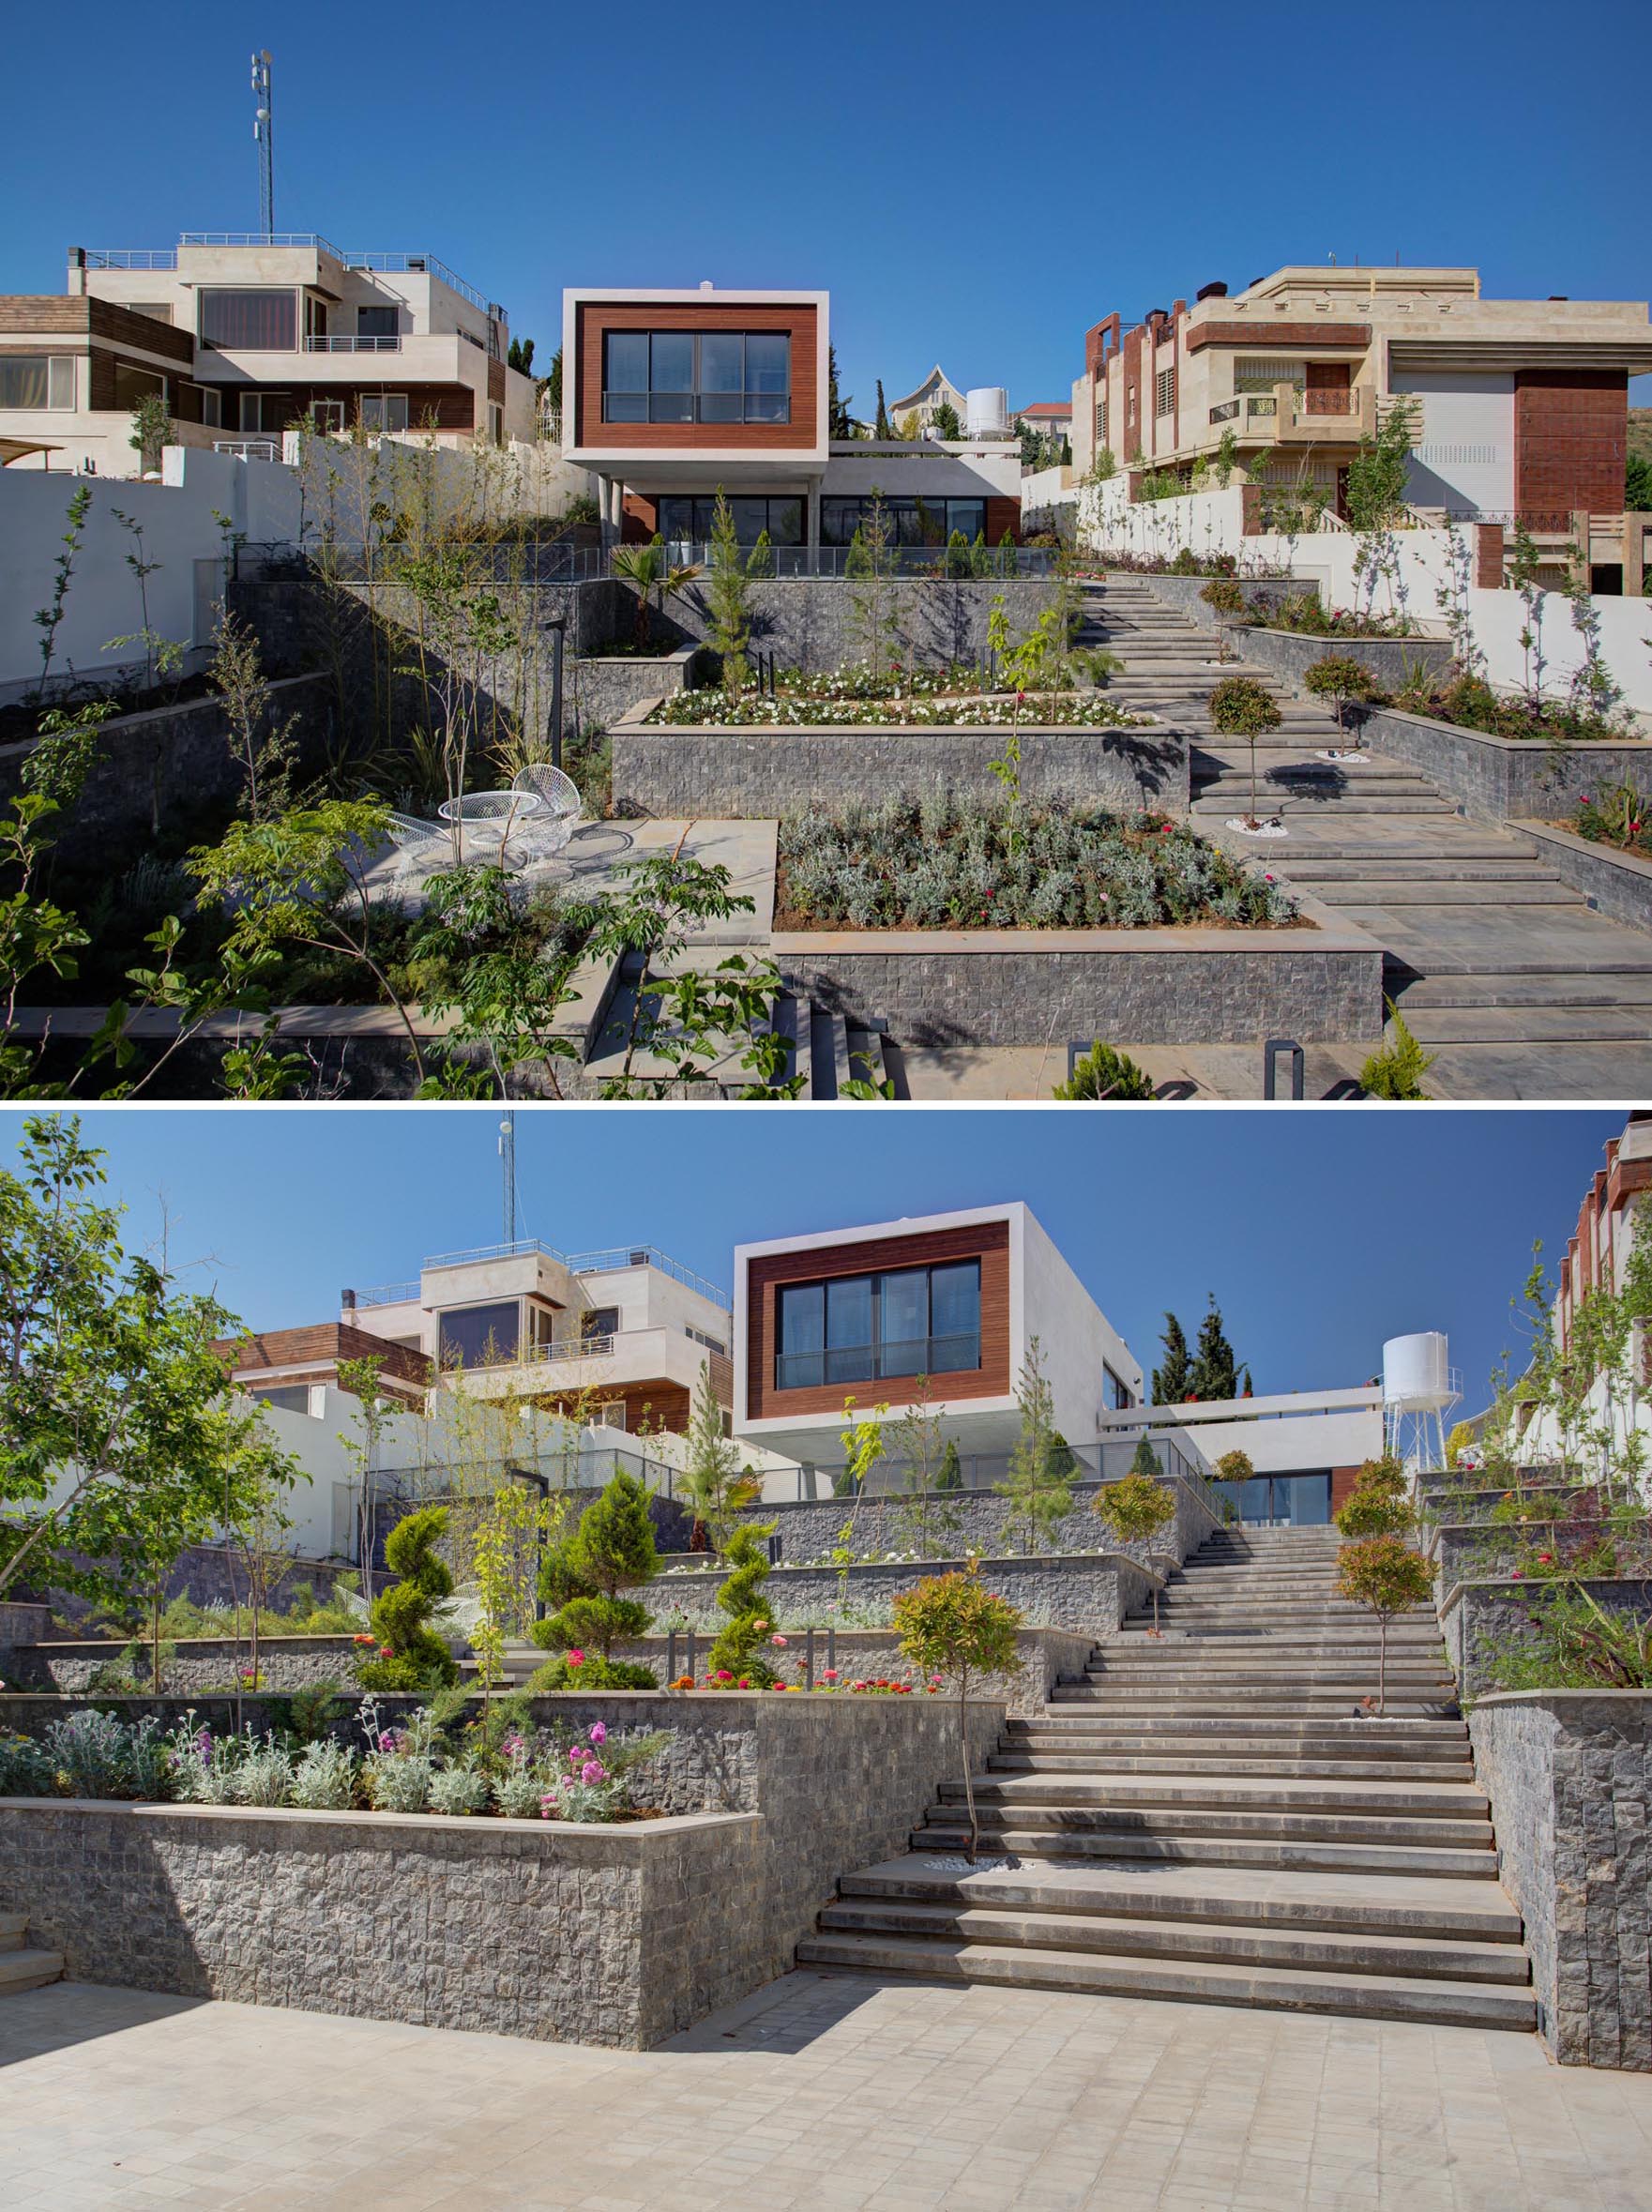 Террасный двор с широкой лестницей, небольшими садами и местами для отдыха.